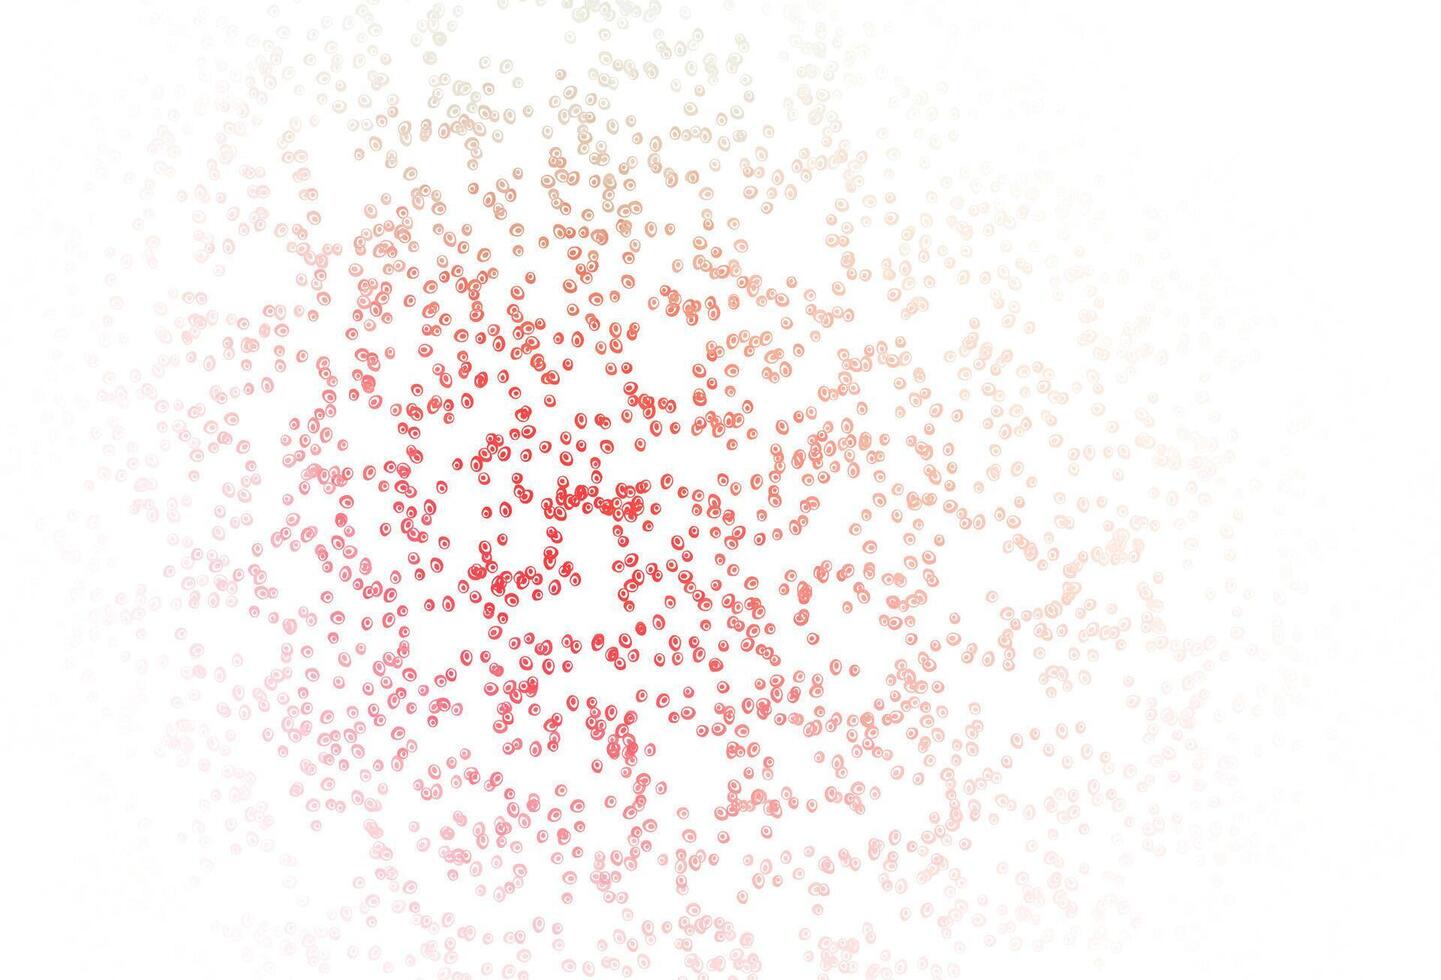 patrón de vector verde claro, rojo con esferas.